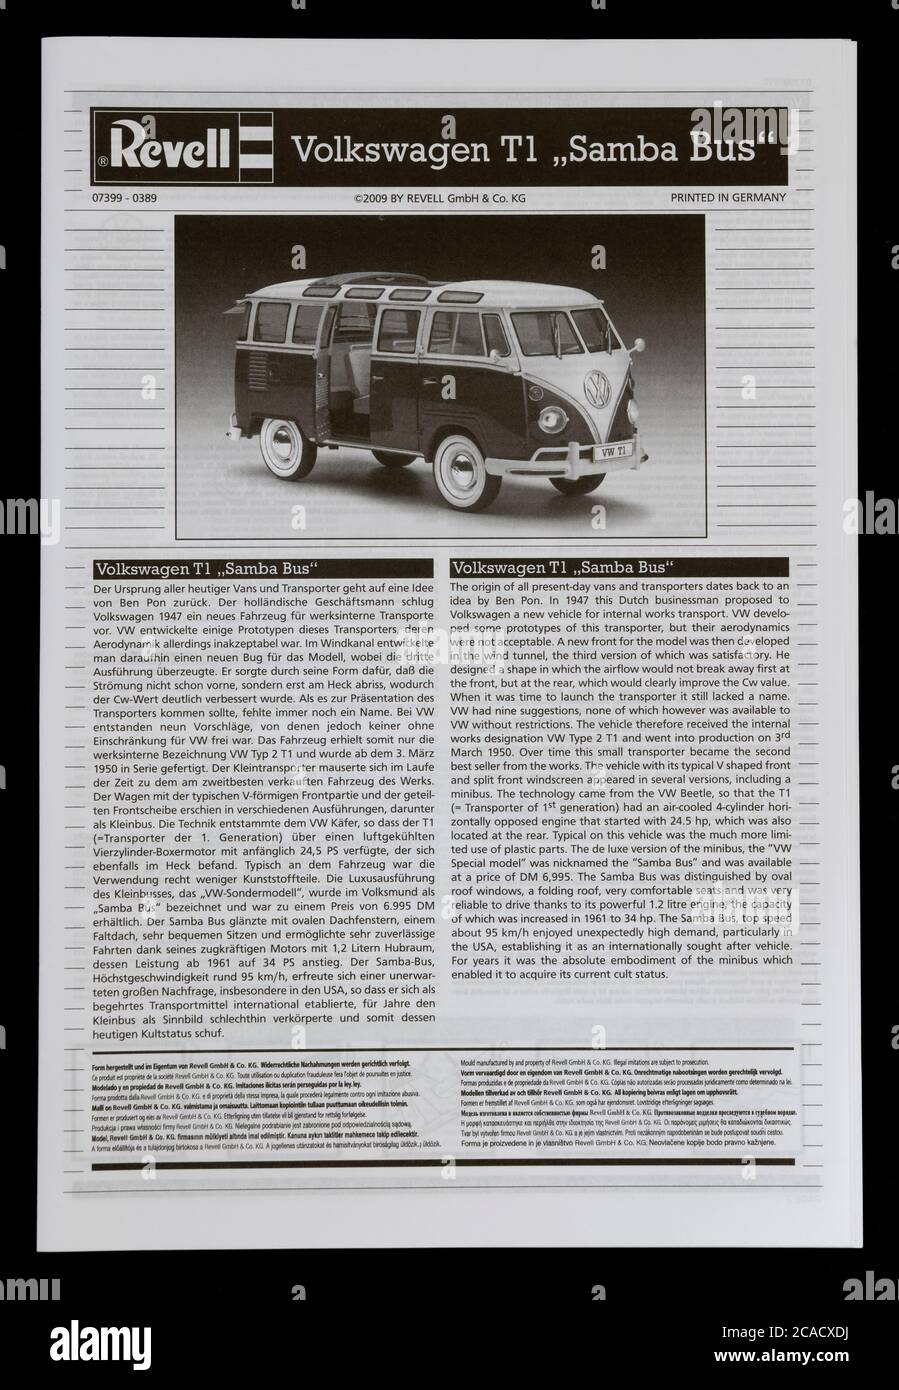 Kit de modèle de bus Samba T1 de Revell Volkswagen. Banque D'Images